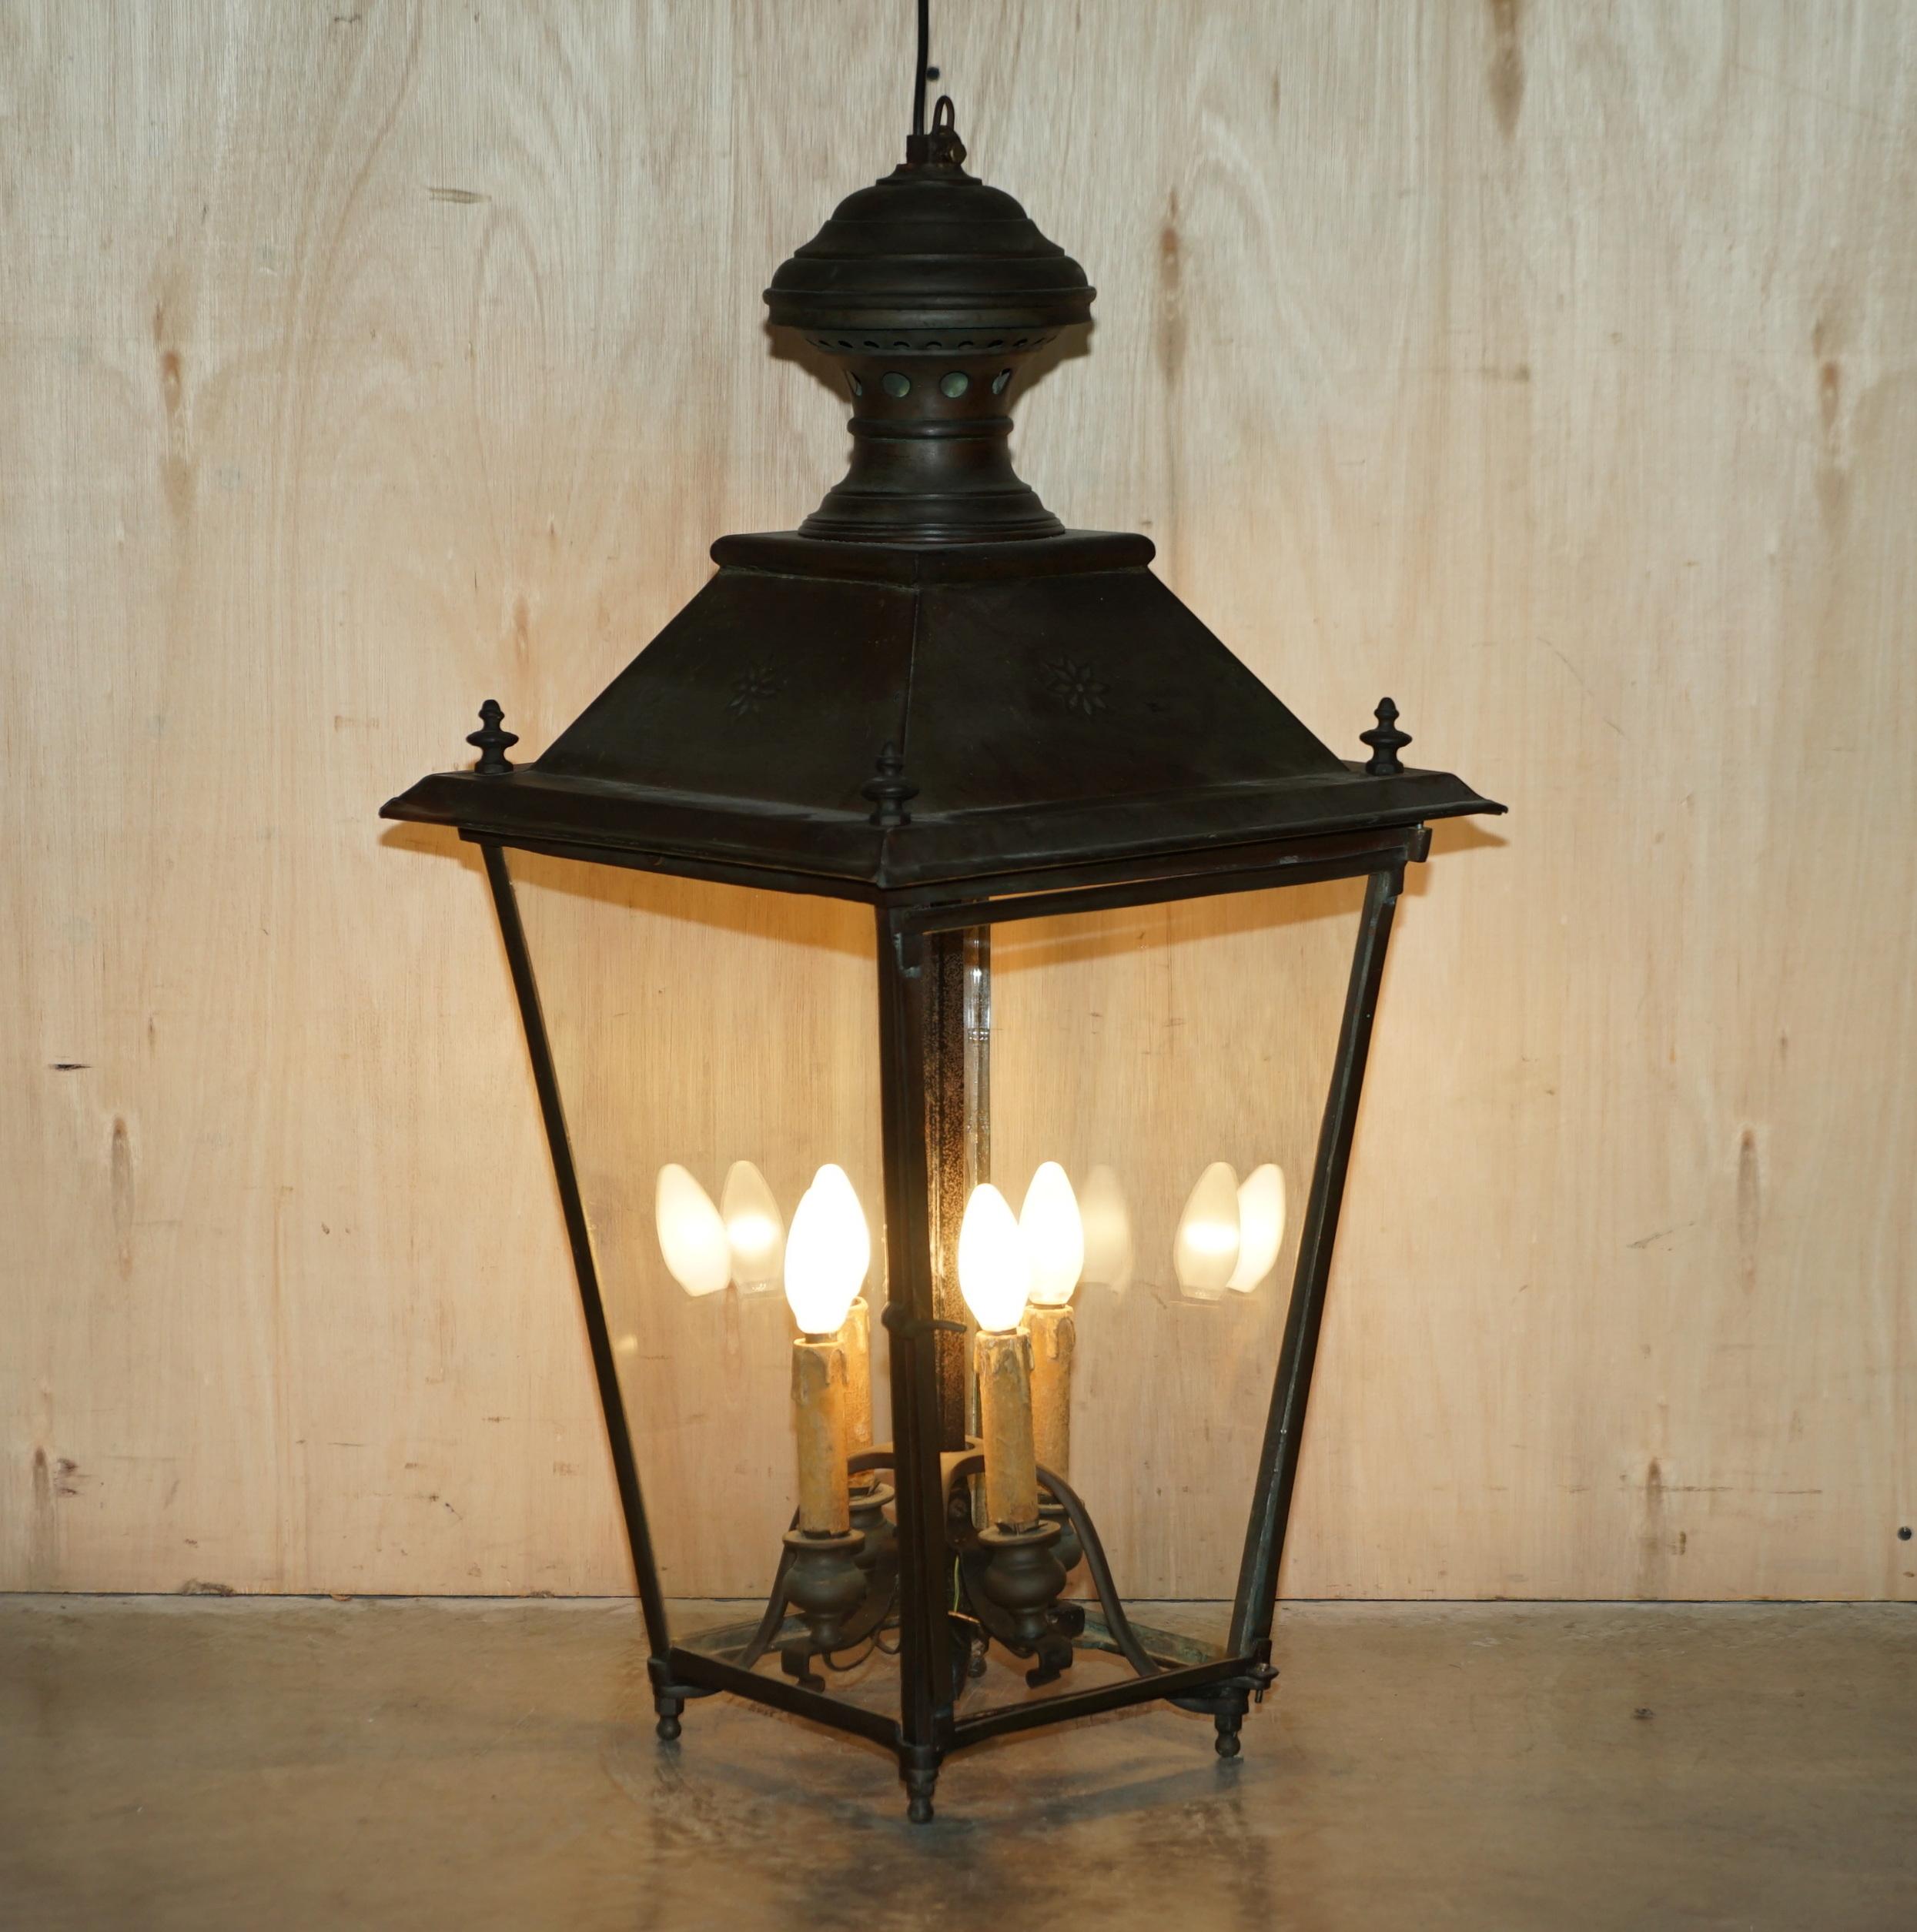 Nous sommes ravis d'offrir à la vente cette belle lanterne suspendue en bronze de style Victorien circa 1880 avec base à quatre bougies.
Une belle lanterne pendante, bien faite et souhaitable, en très bon état d'origine. 

Cette pièce est pleine de